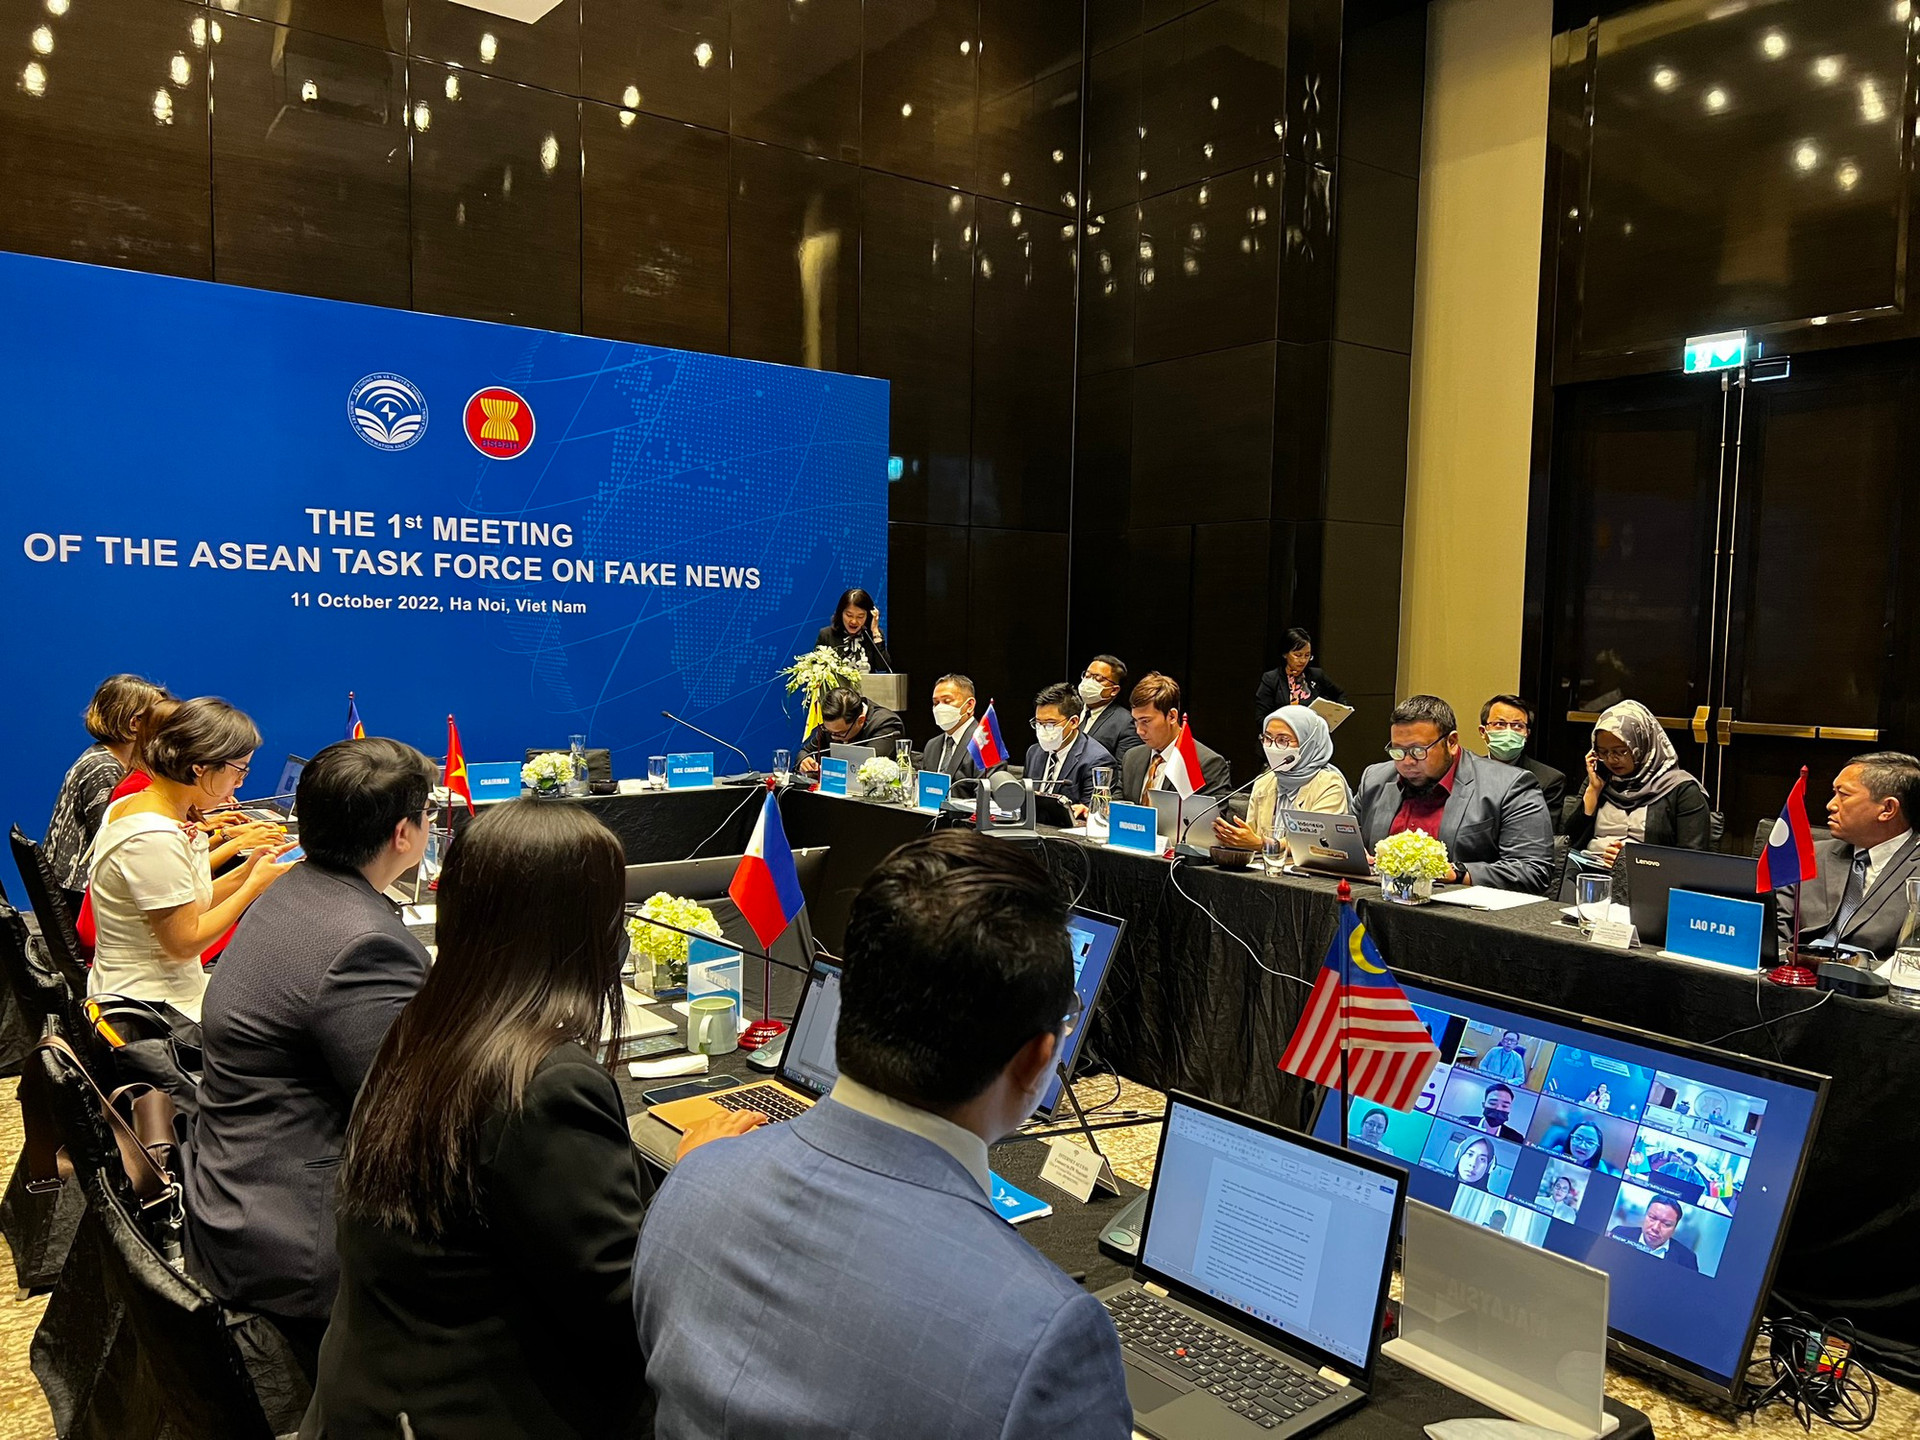 Thành lập Nhóm chuyên trách ASEAN về phòng, chống tin giả: Vì môi trường Internet lành mạnh hơn - Ảnh 1.